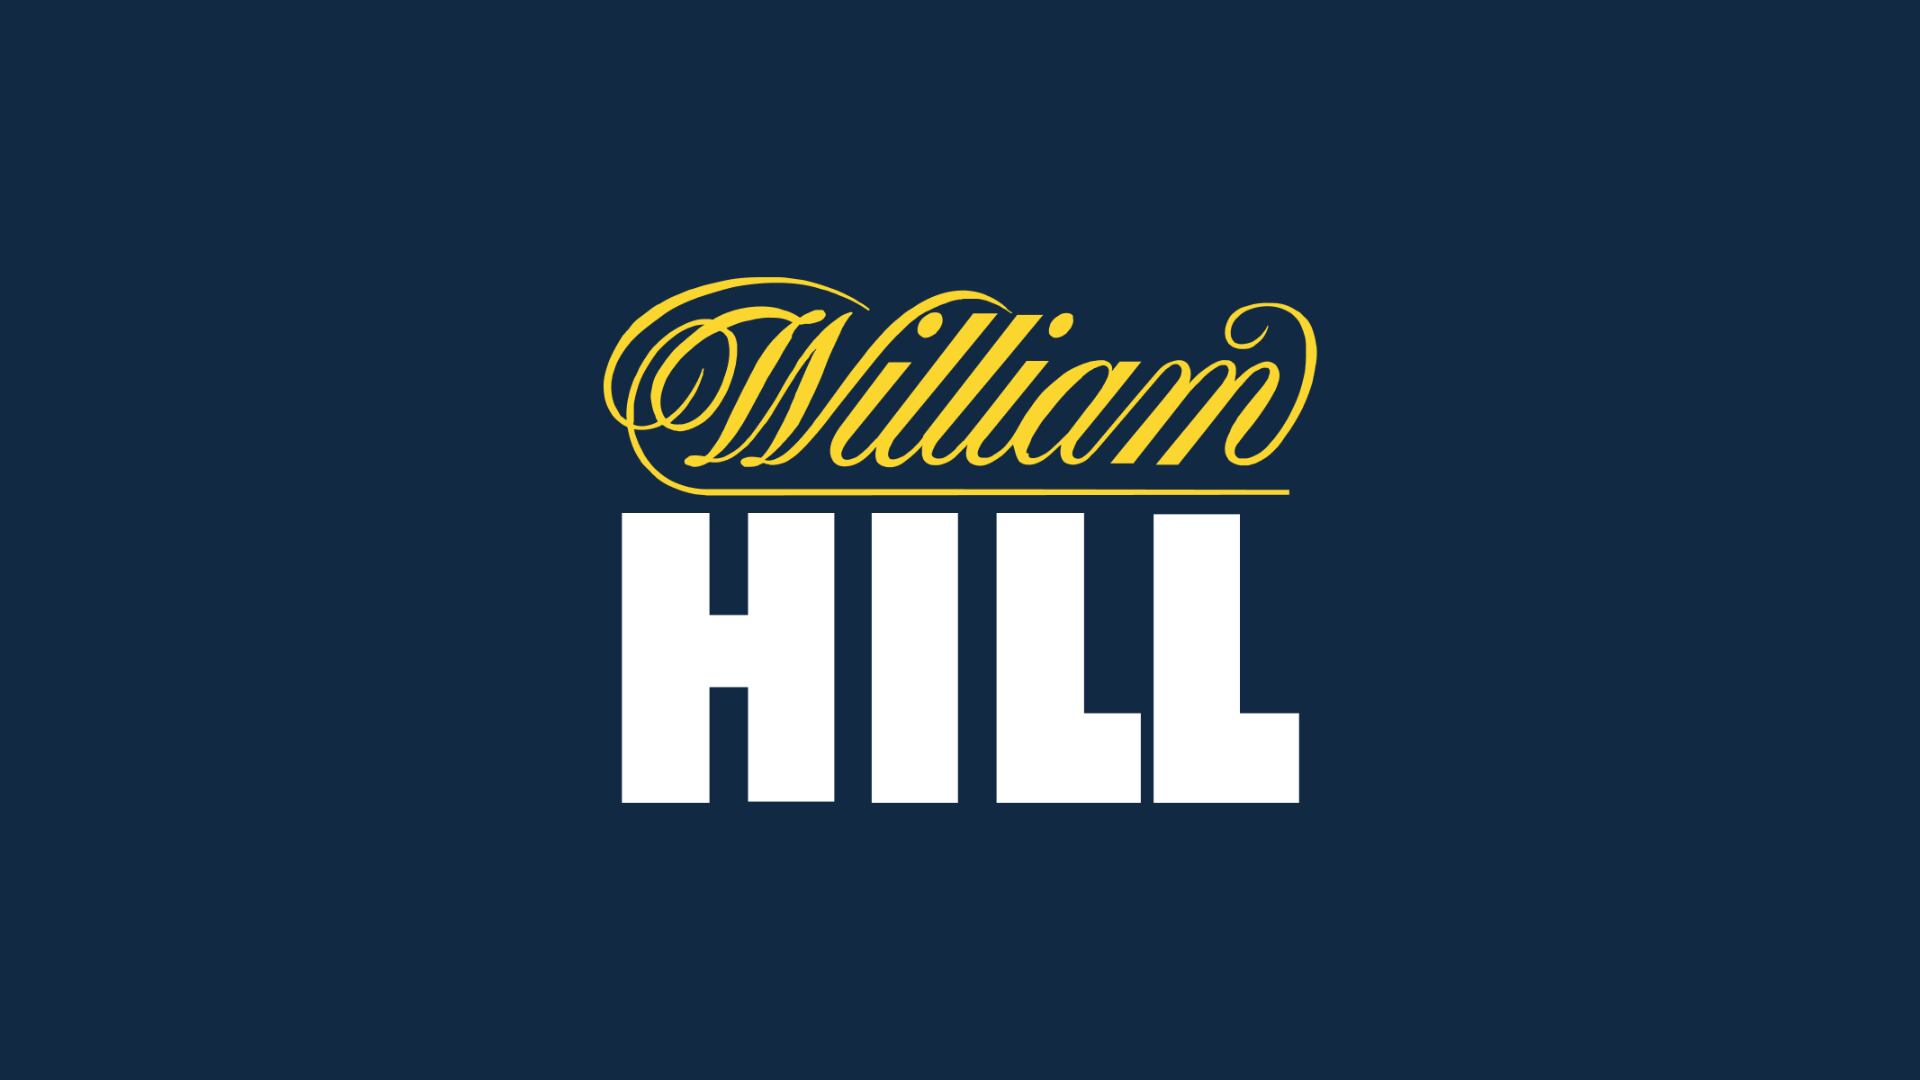 William hill online casino